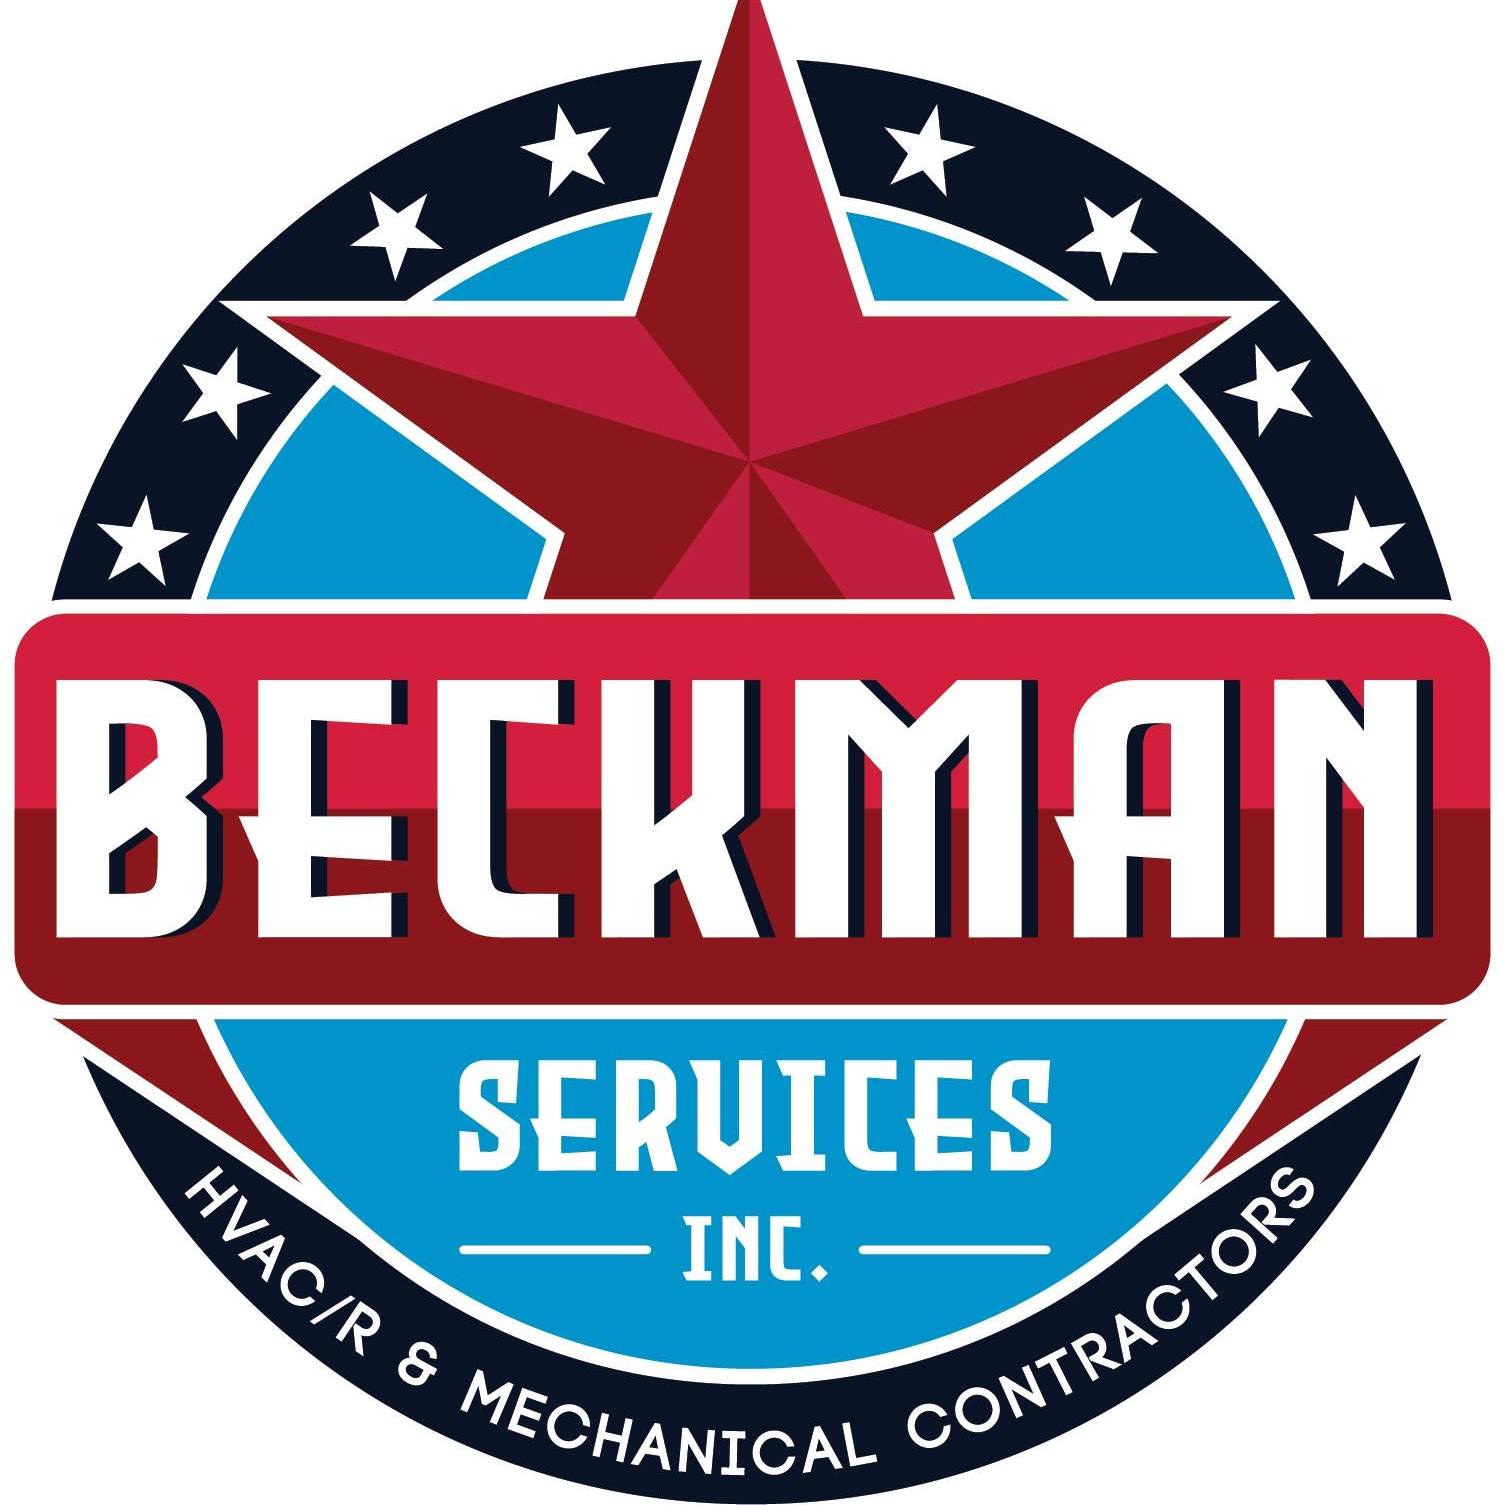 Beckman Services